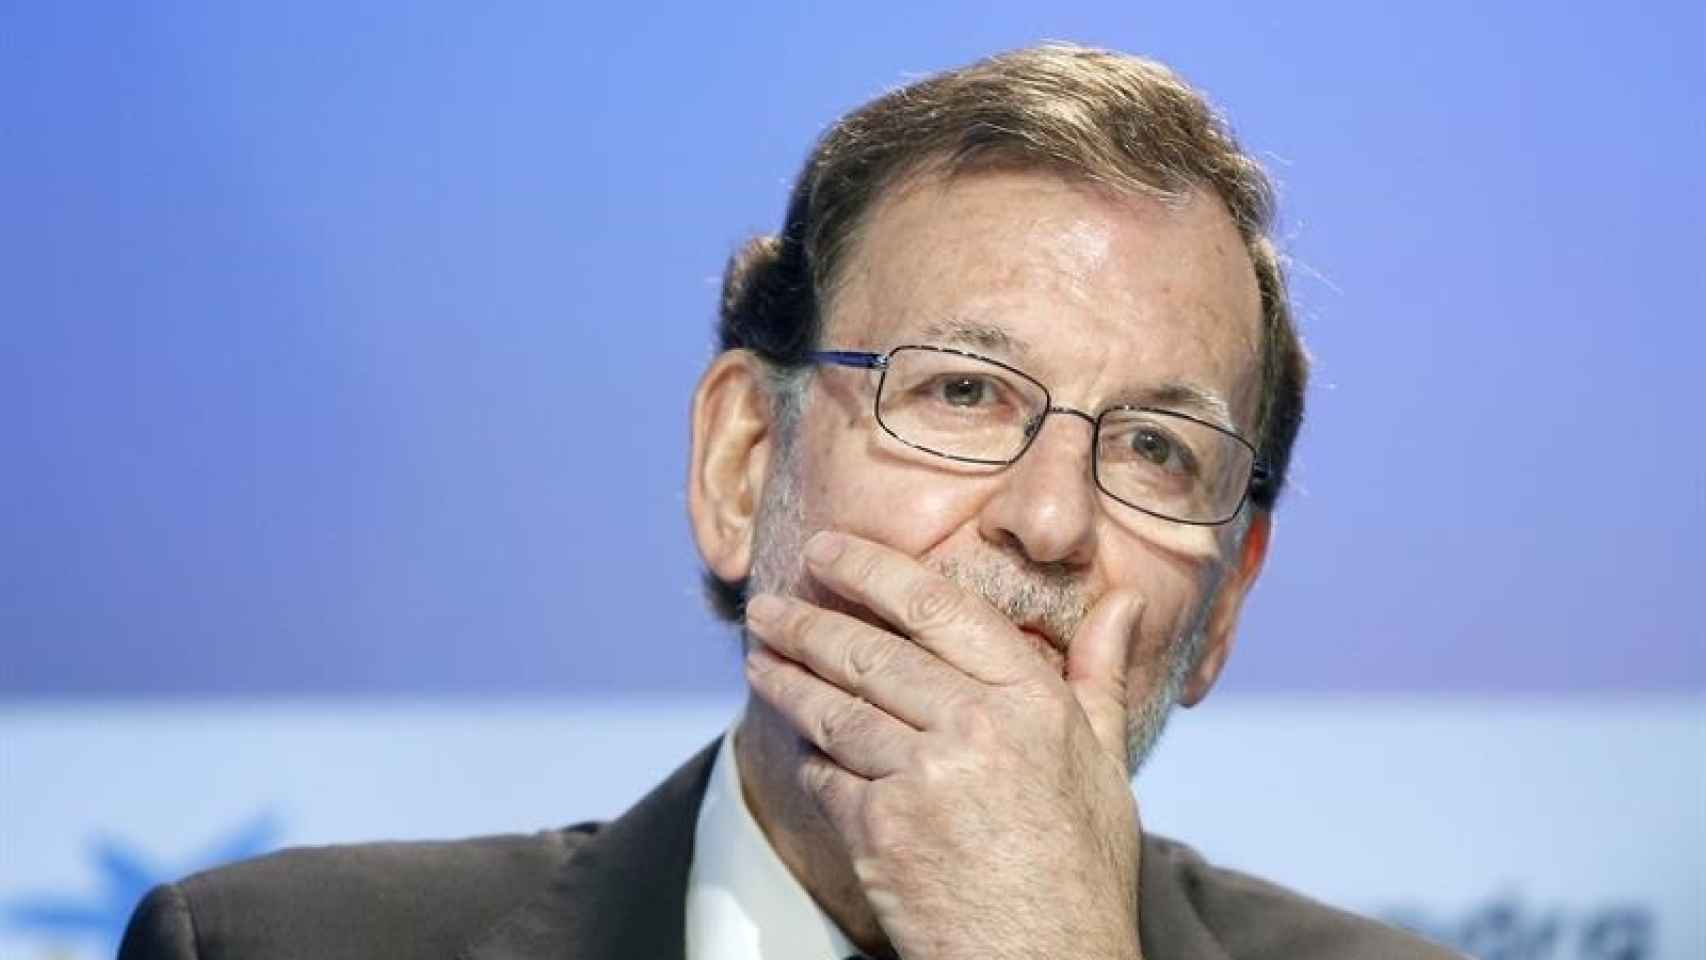 El presidente del Gobierno en funciones, Mariano Rajoy/Andreu Dalmau/EFE